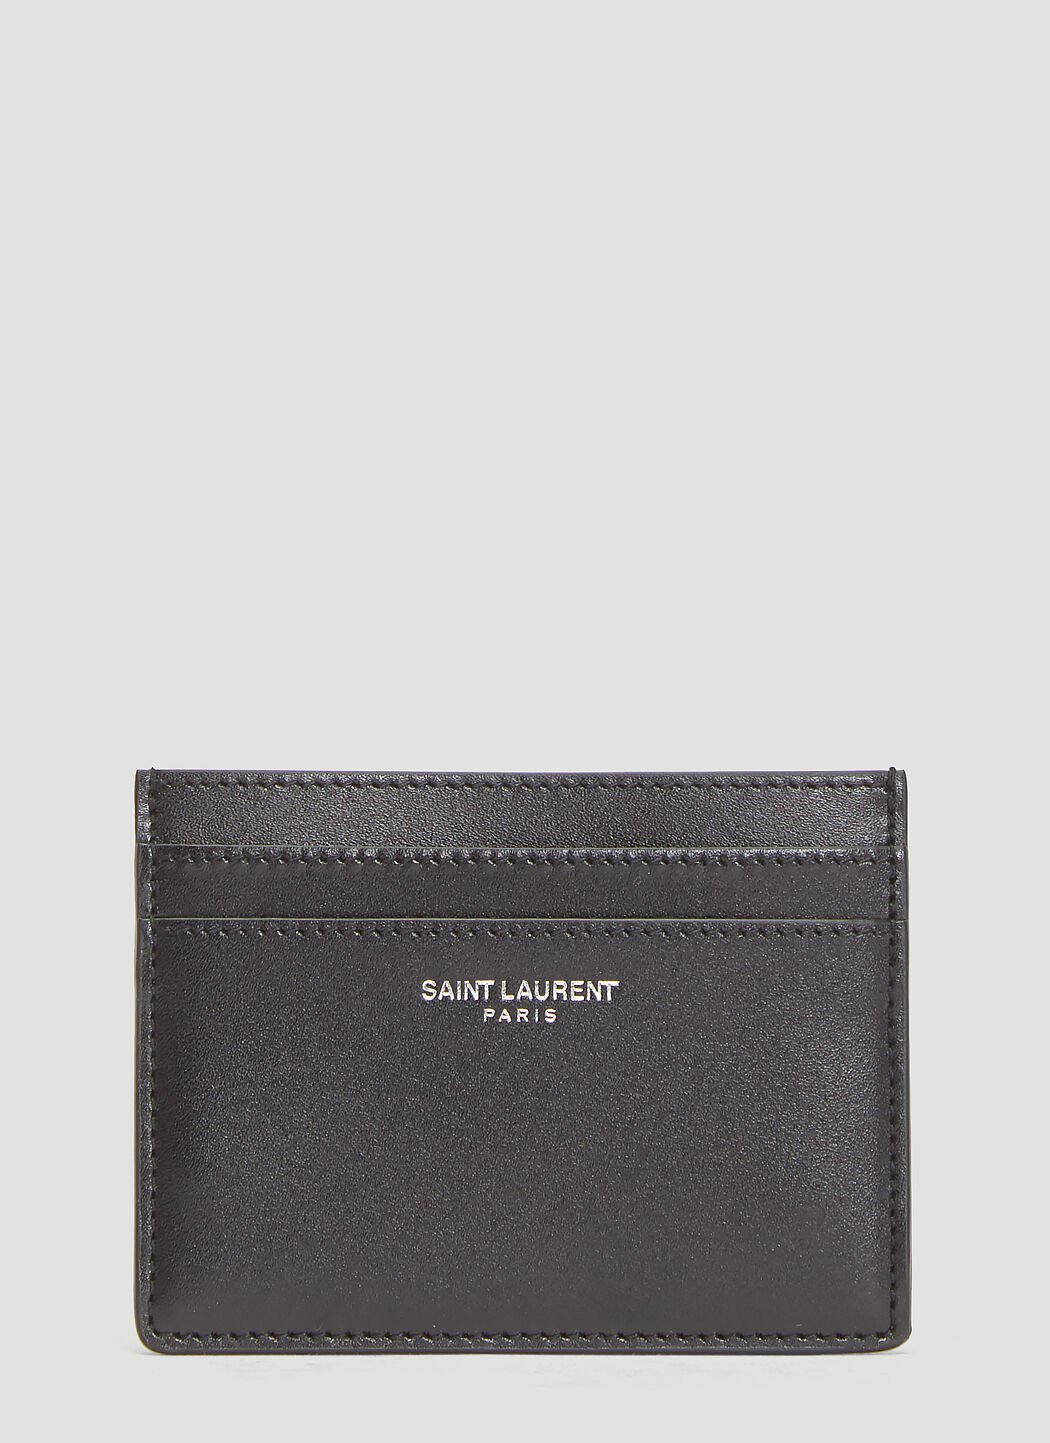 Saint Laurent Credit Card Holder 黑色 sla0238013